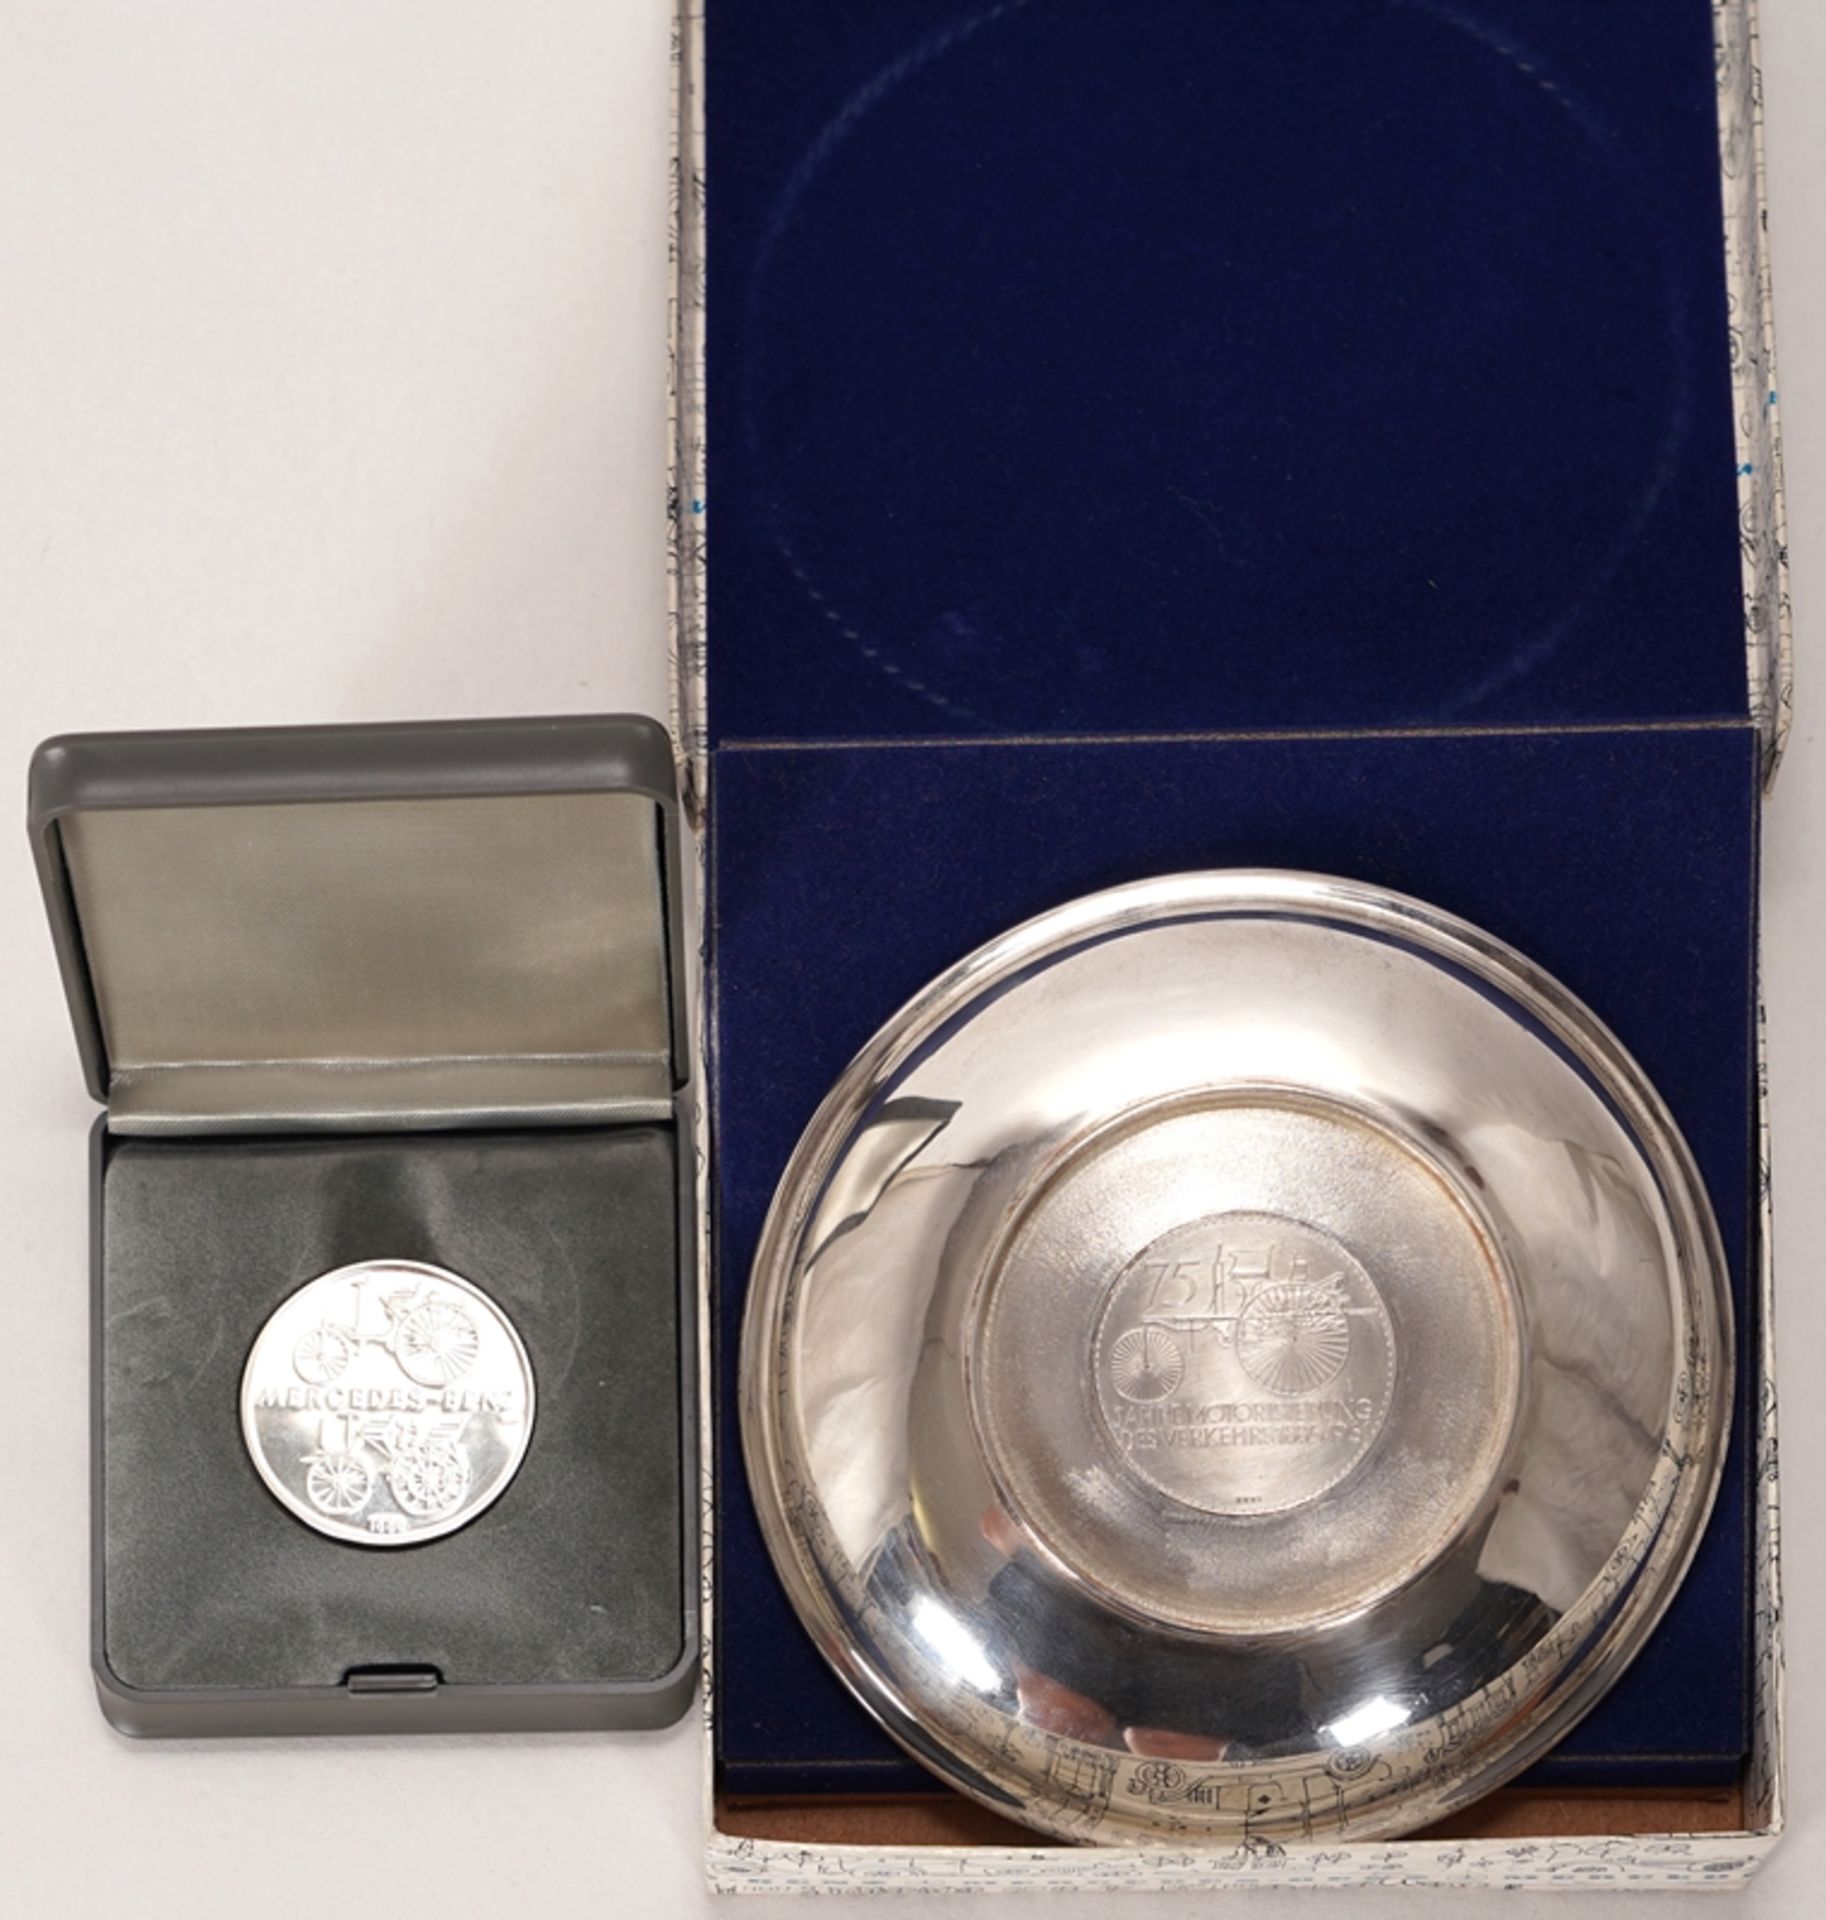 Zwei Daimler Benz Medaillen | Two Daimler Benz medal - Image 2 of 5